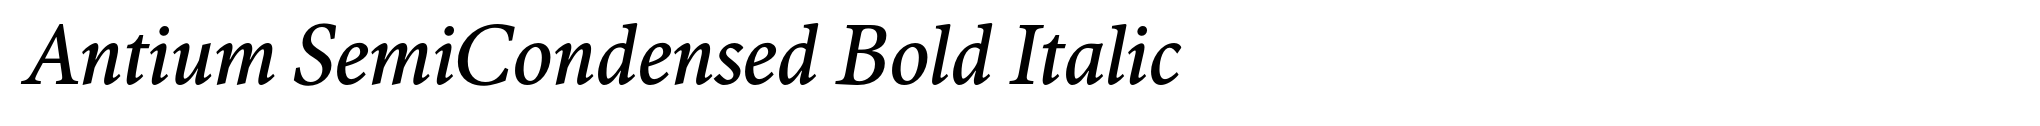 Antium SemiCondensed Bold Italic image